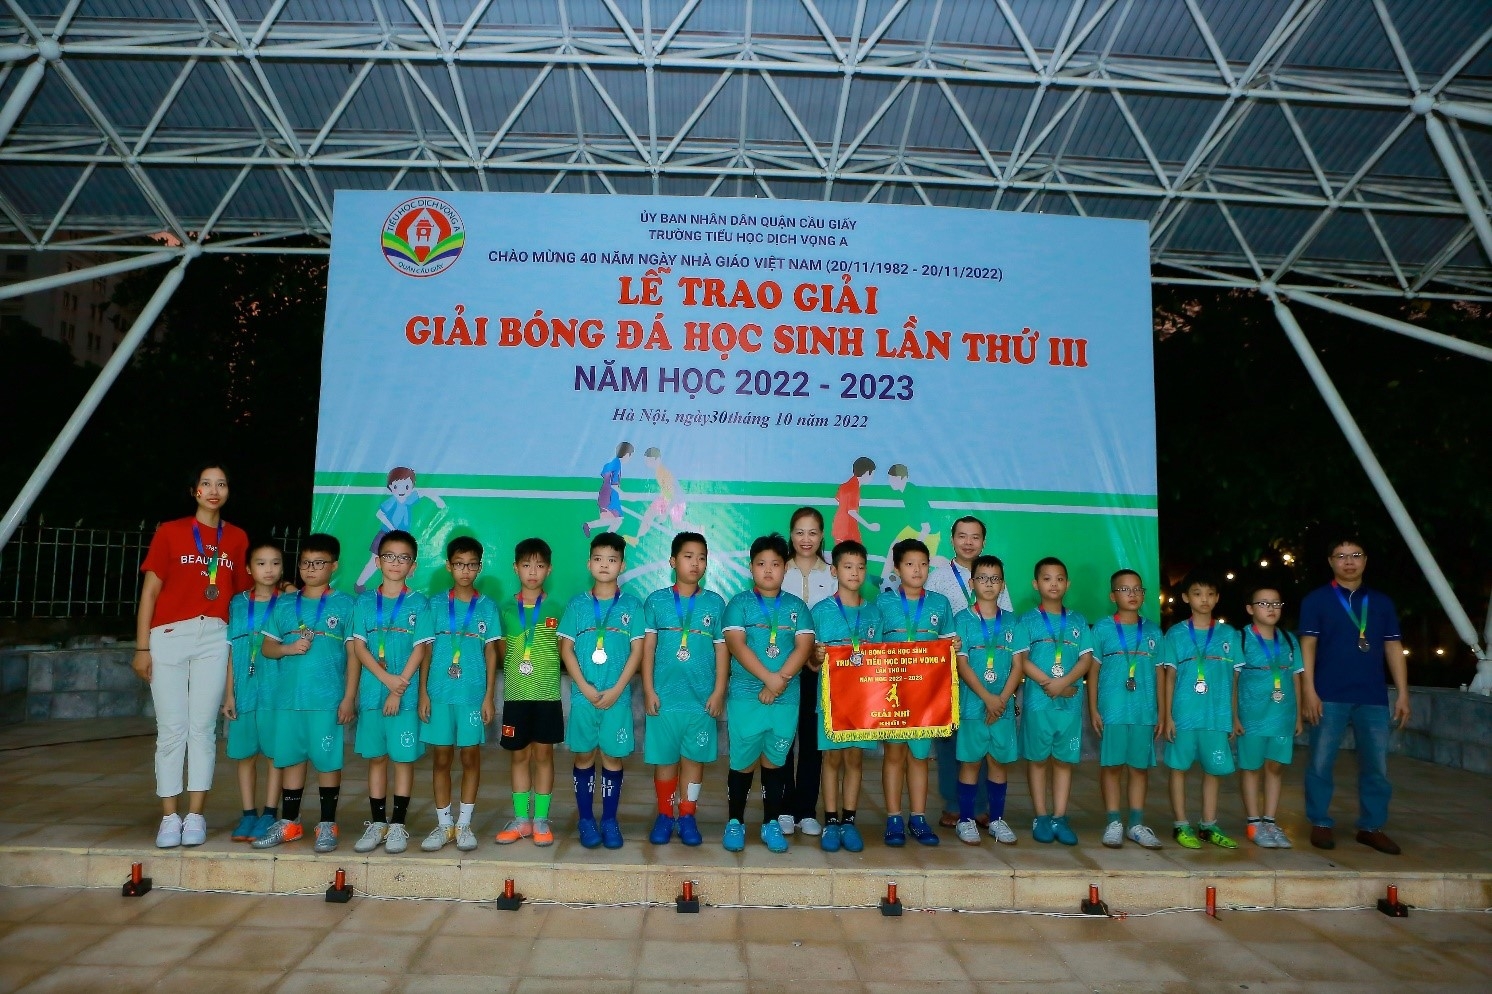 Trường Tiểu học Dịch Vọng A tổ chức thành công “Giải bóng đá học sinh lần thứ III năm học 2022-2023”